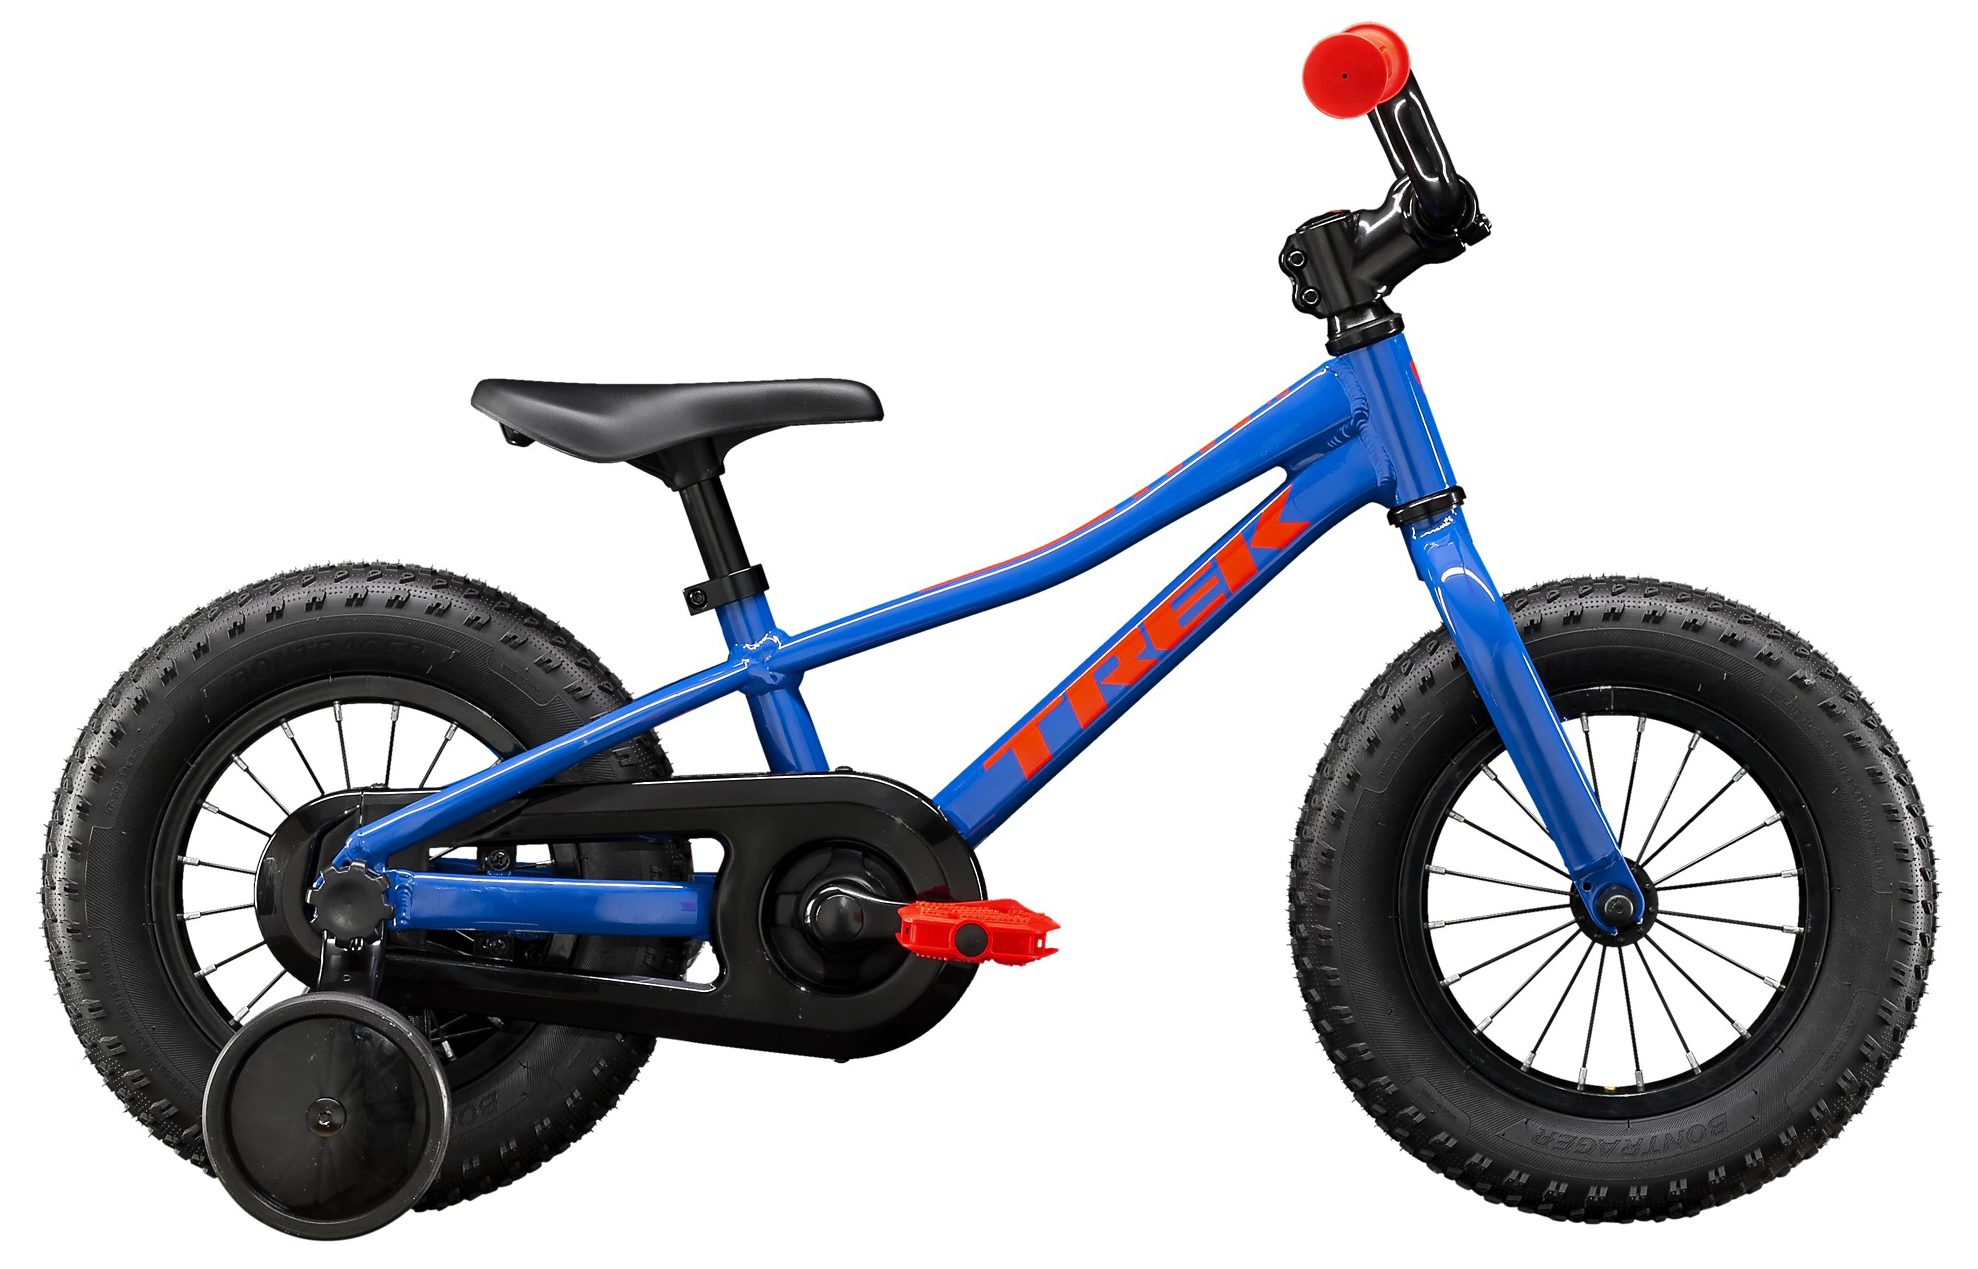  Отзывы о Детском велосипеде Trek PreCaliber 12 Boys 2020